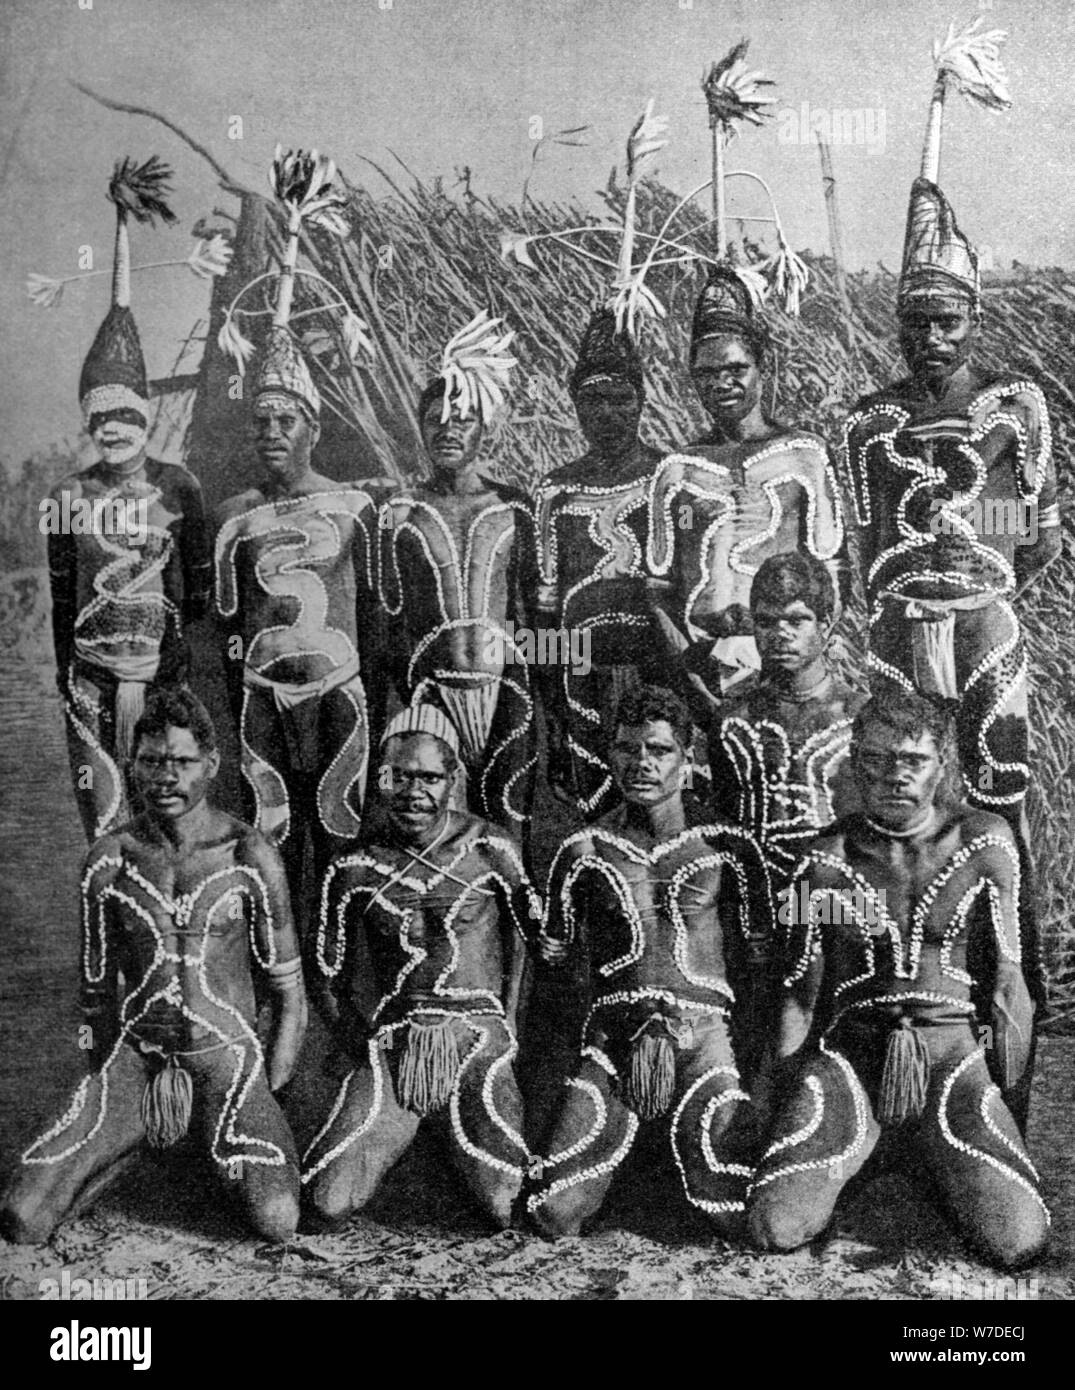 Les hommes de la terre jamais 'Jamais', dans totem, tenue en Australie, 1922.Artiste : PJ MacMahon Banque D'Images